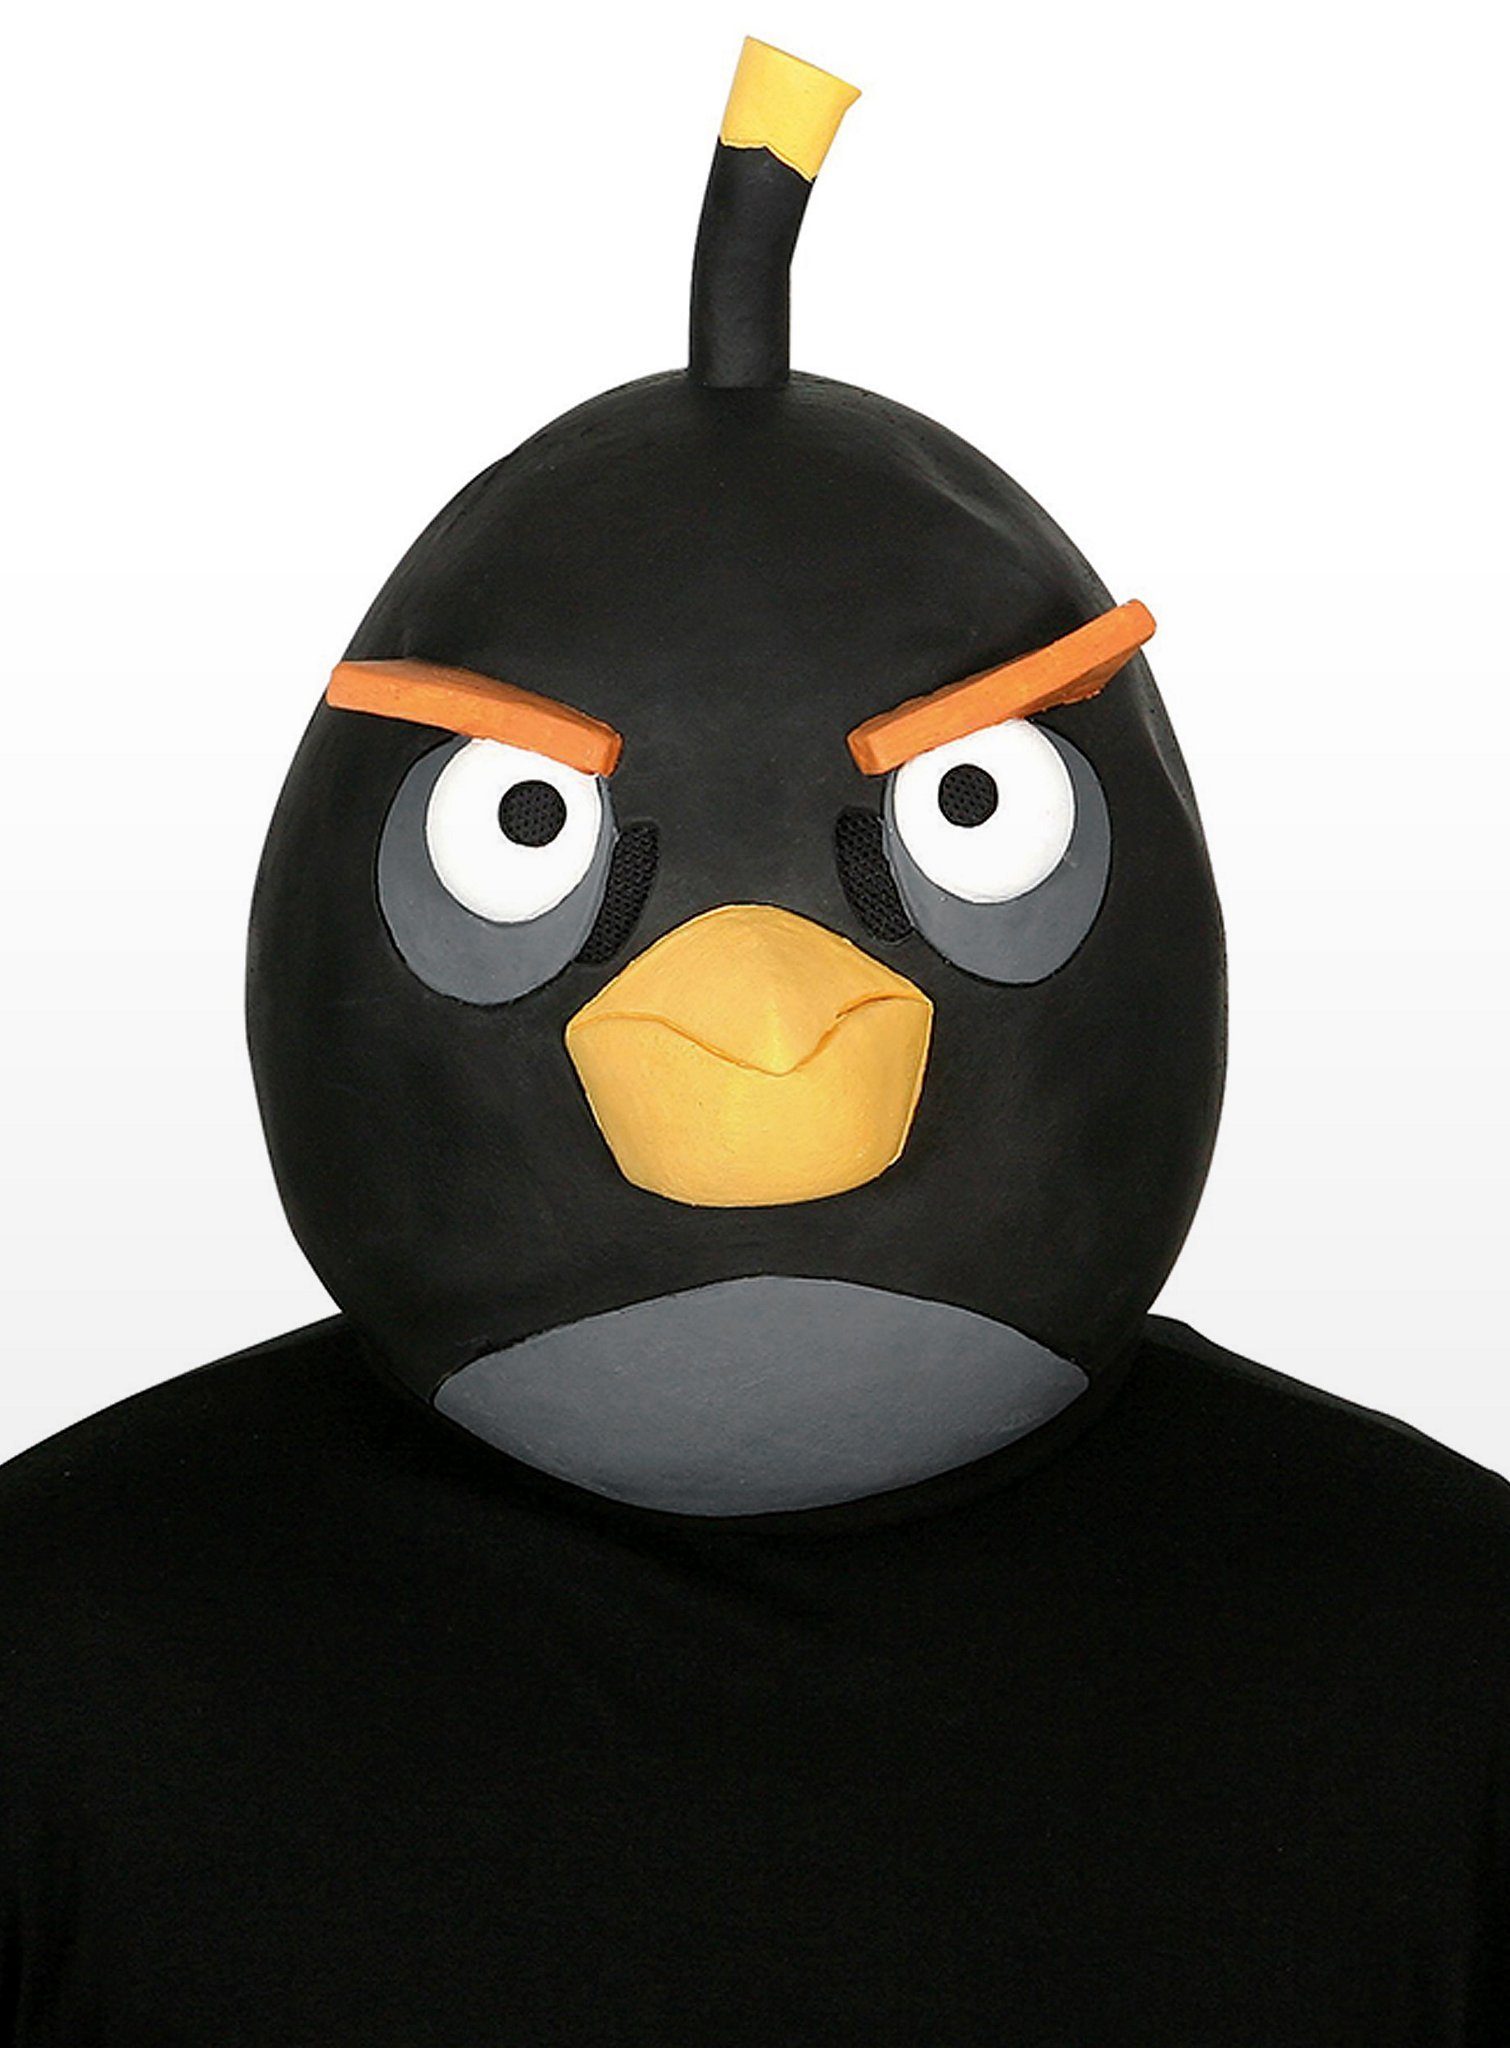 Metamorph Verkleidungsmaske Angry Birds schwarz (Sonderposten), Original lizenzierte Angry Birds-Maske aus dem Kultspiel